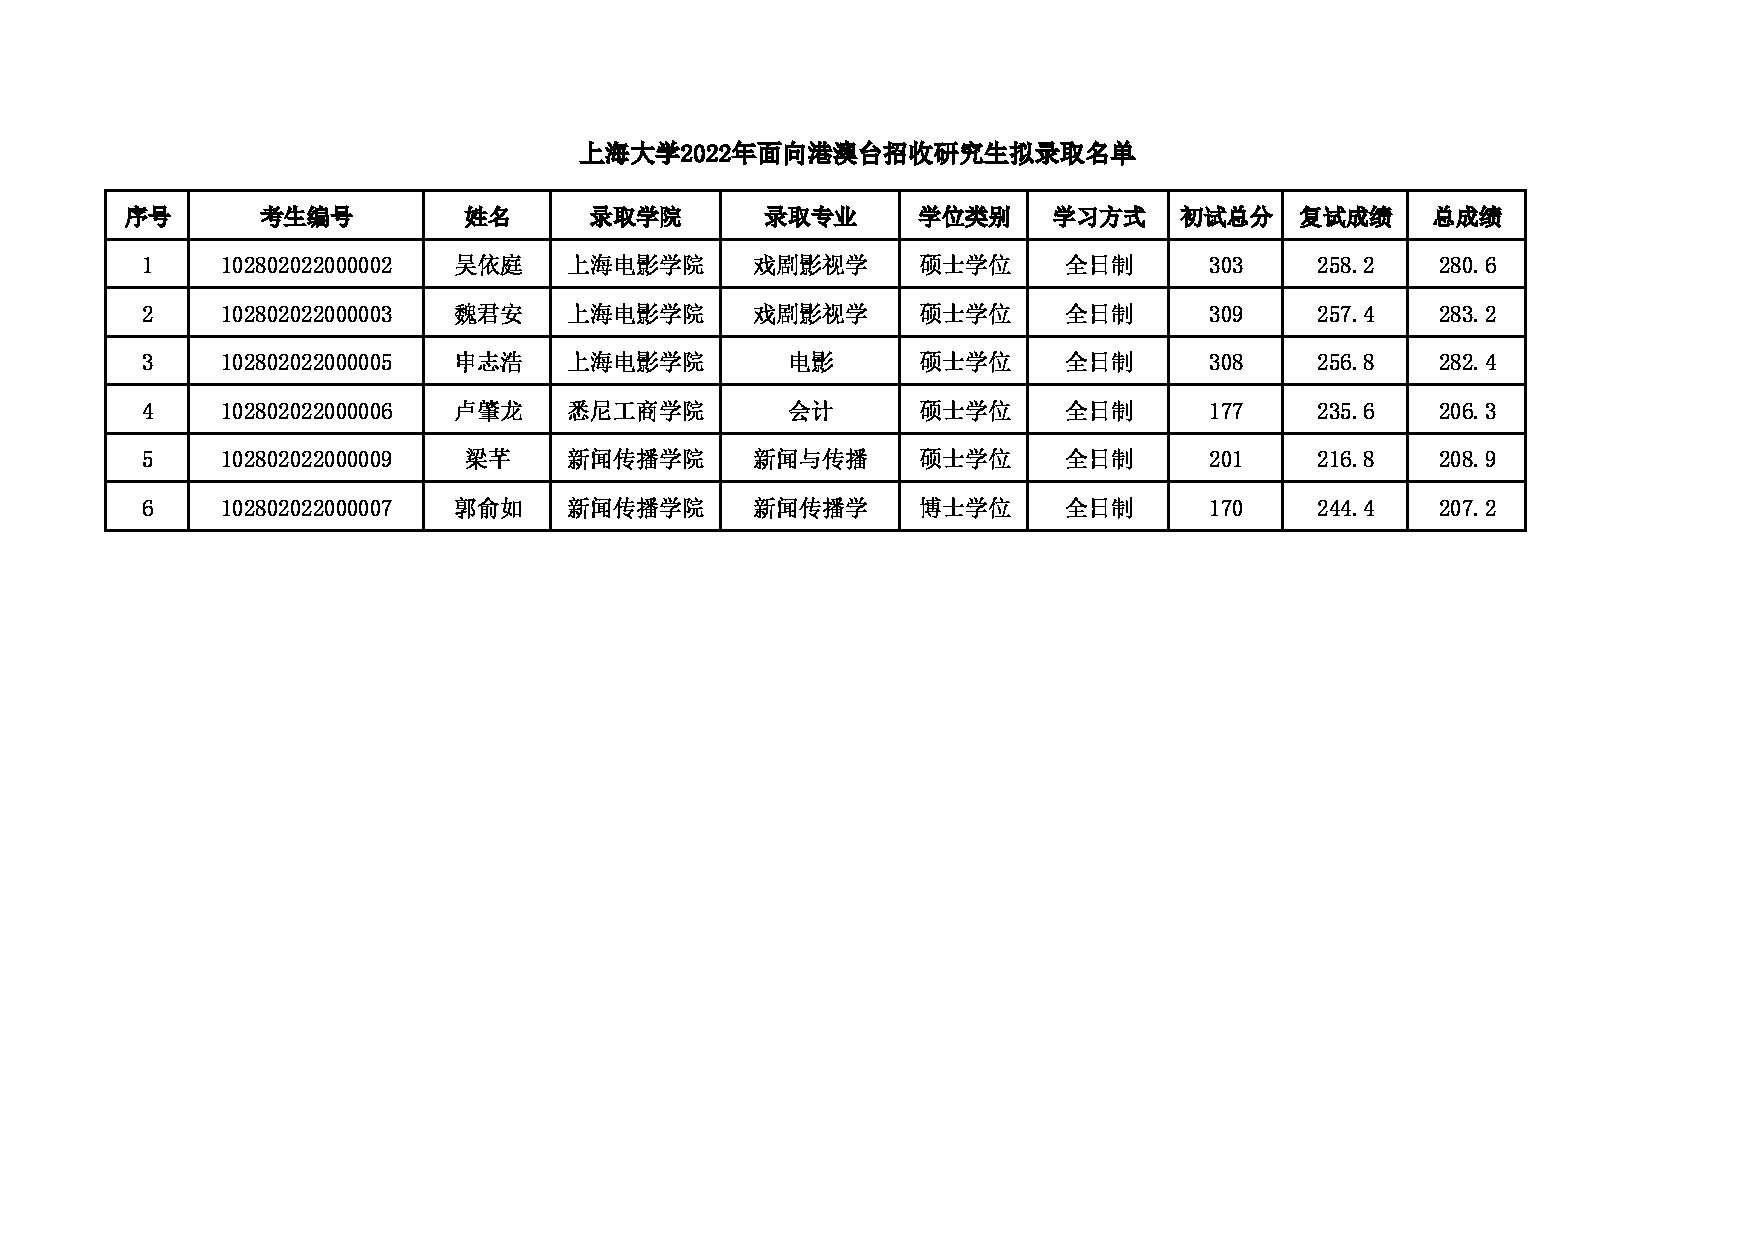 2022考研拟录取名单：上海大学2022年面向香港、澳门、台湾地区招收研究生拟录取名单第1页